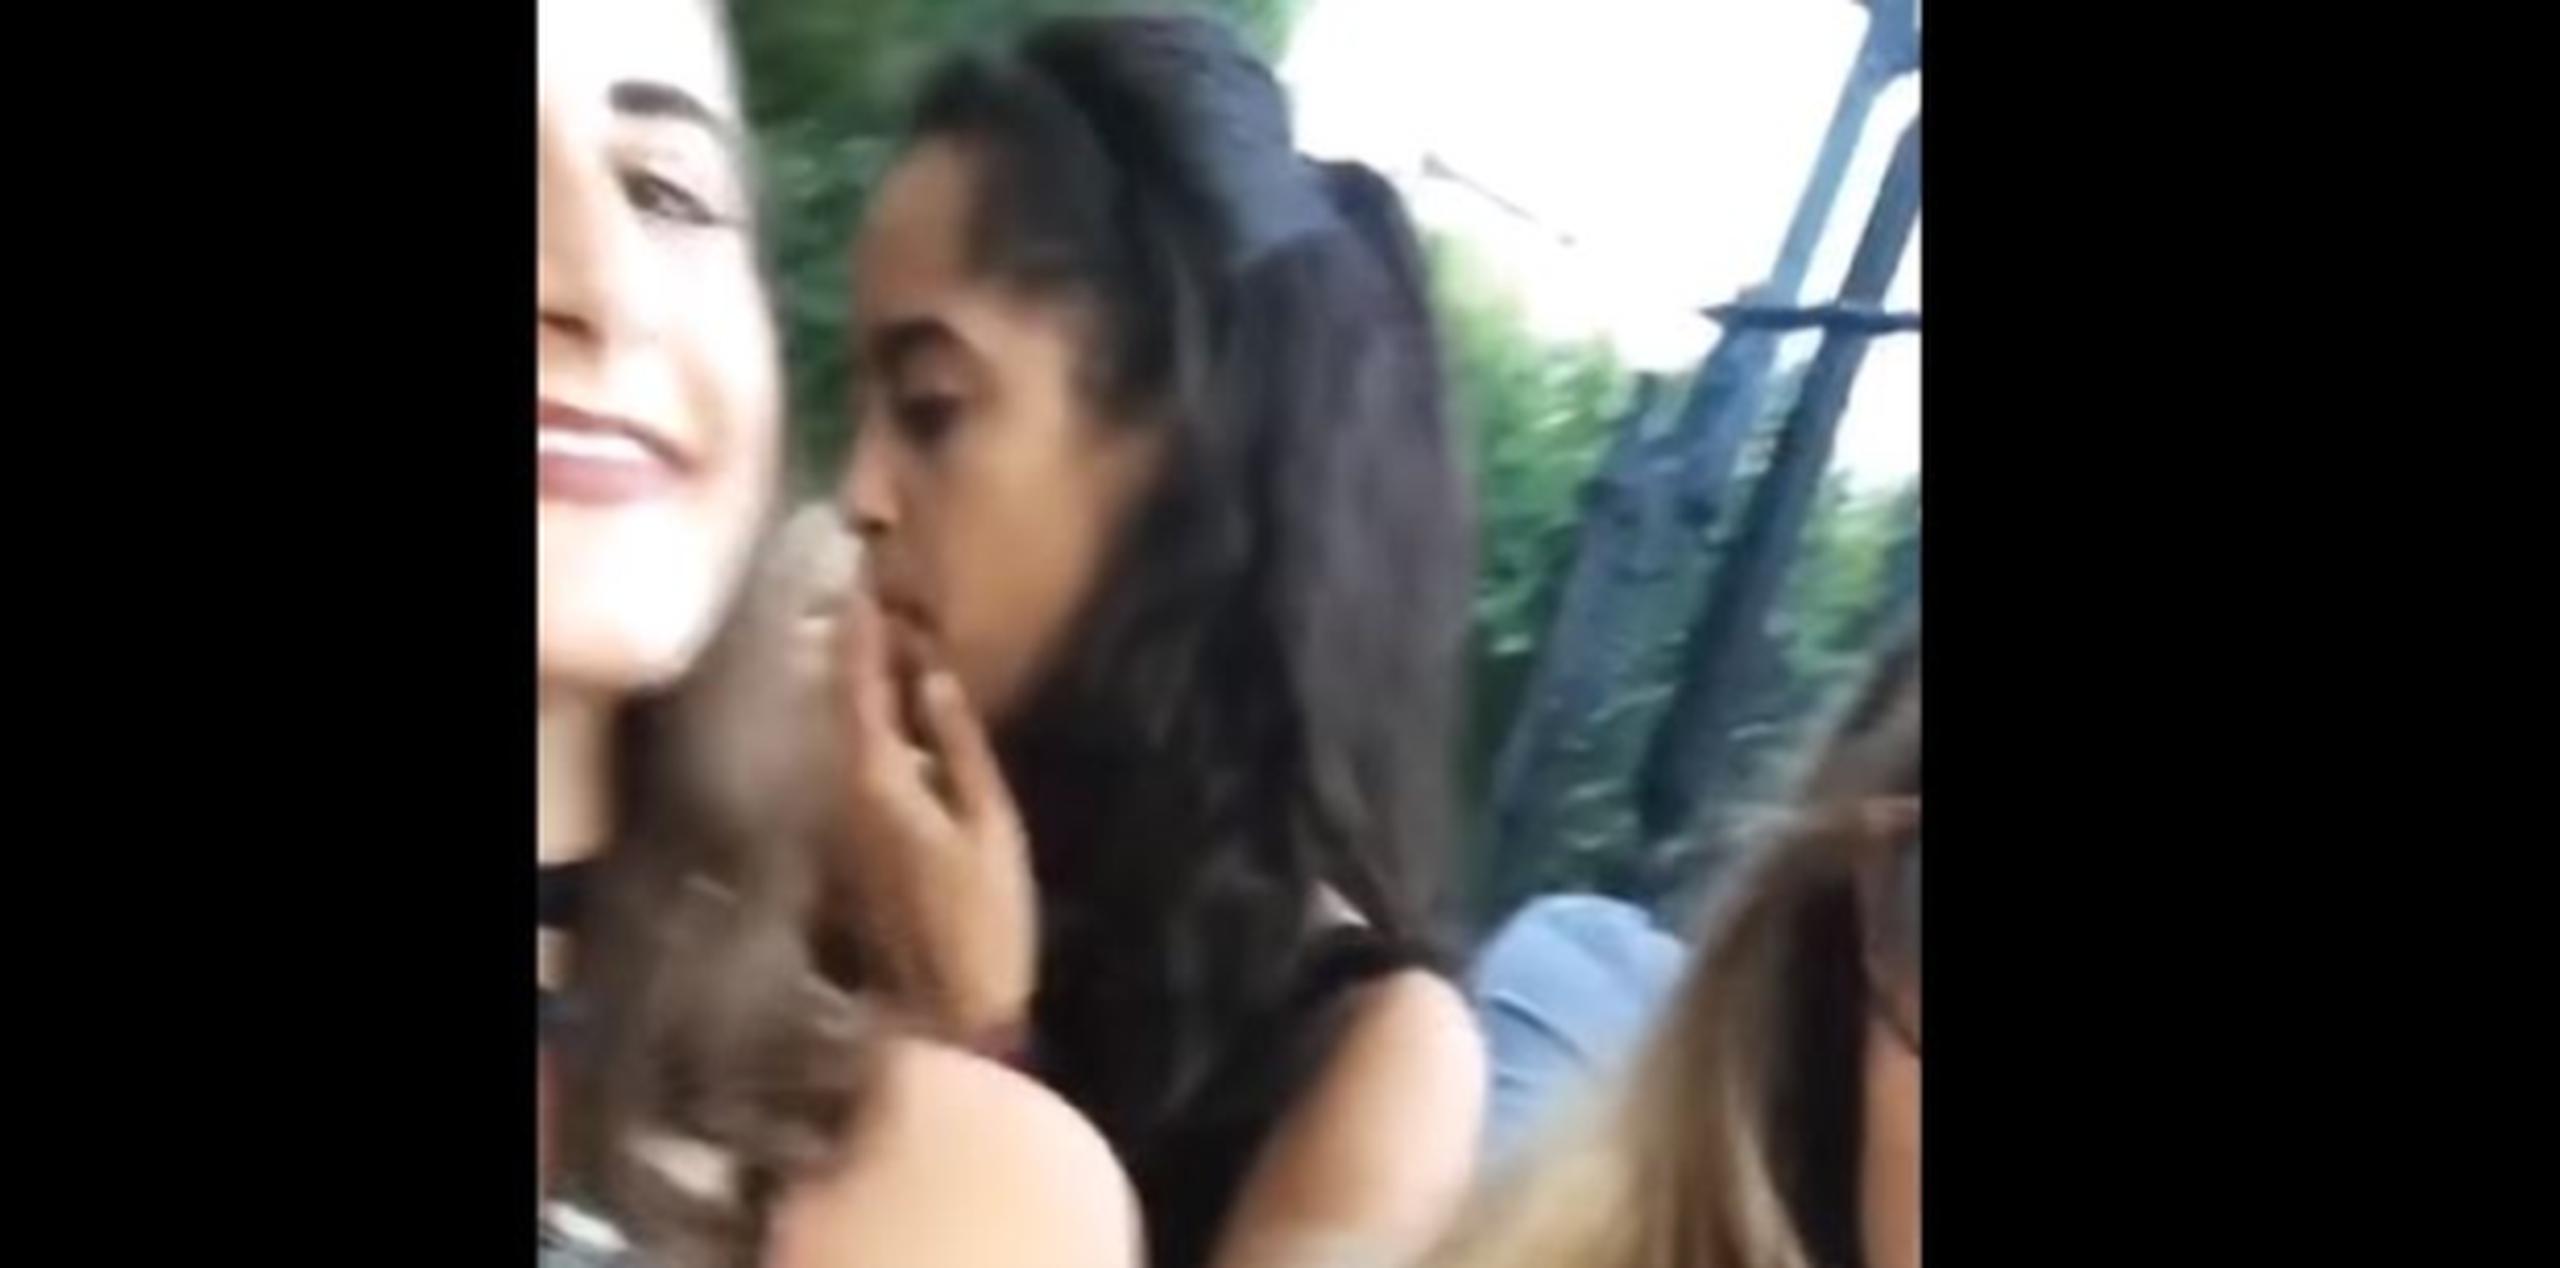 El video muestra en primer plano a una chica sacando la lengua y bailando en ese mismo festival, y detrás suyo, Malia fumando lo que parece ser cannabis. (YouTube)